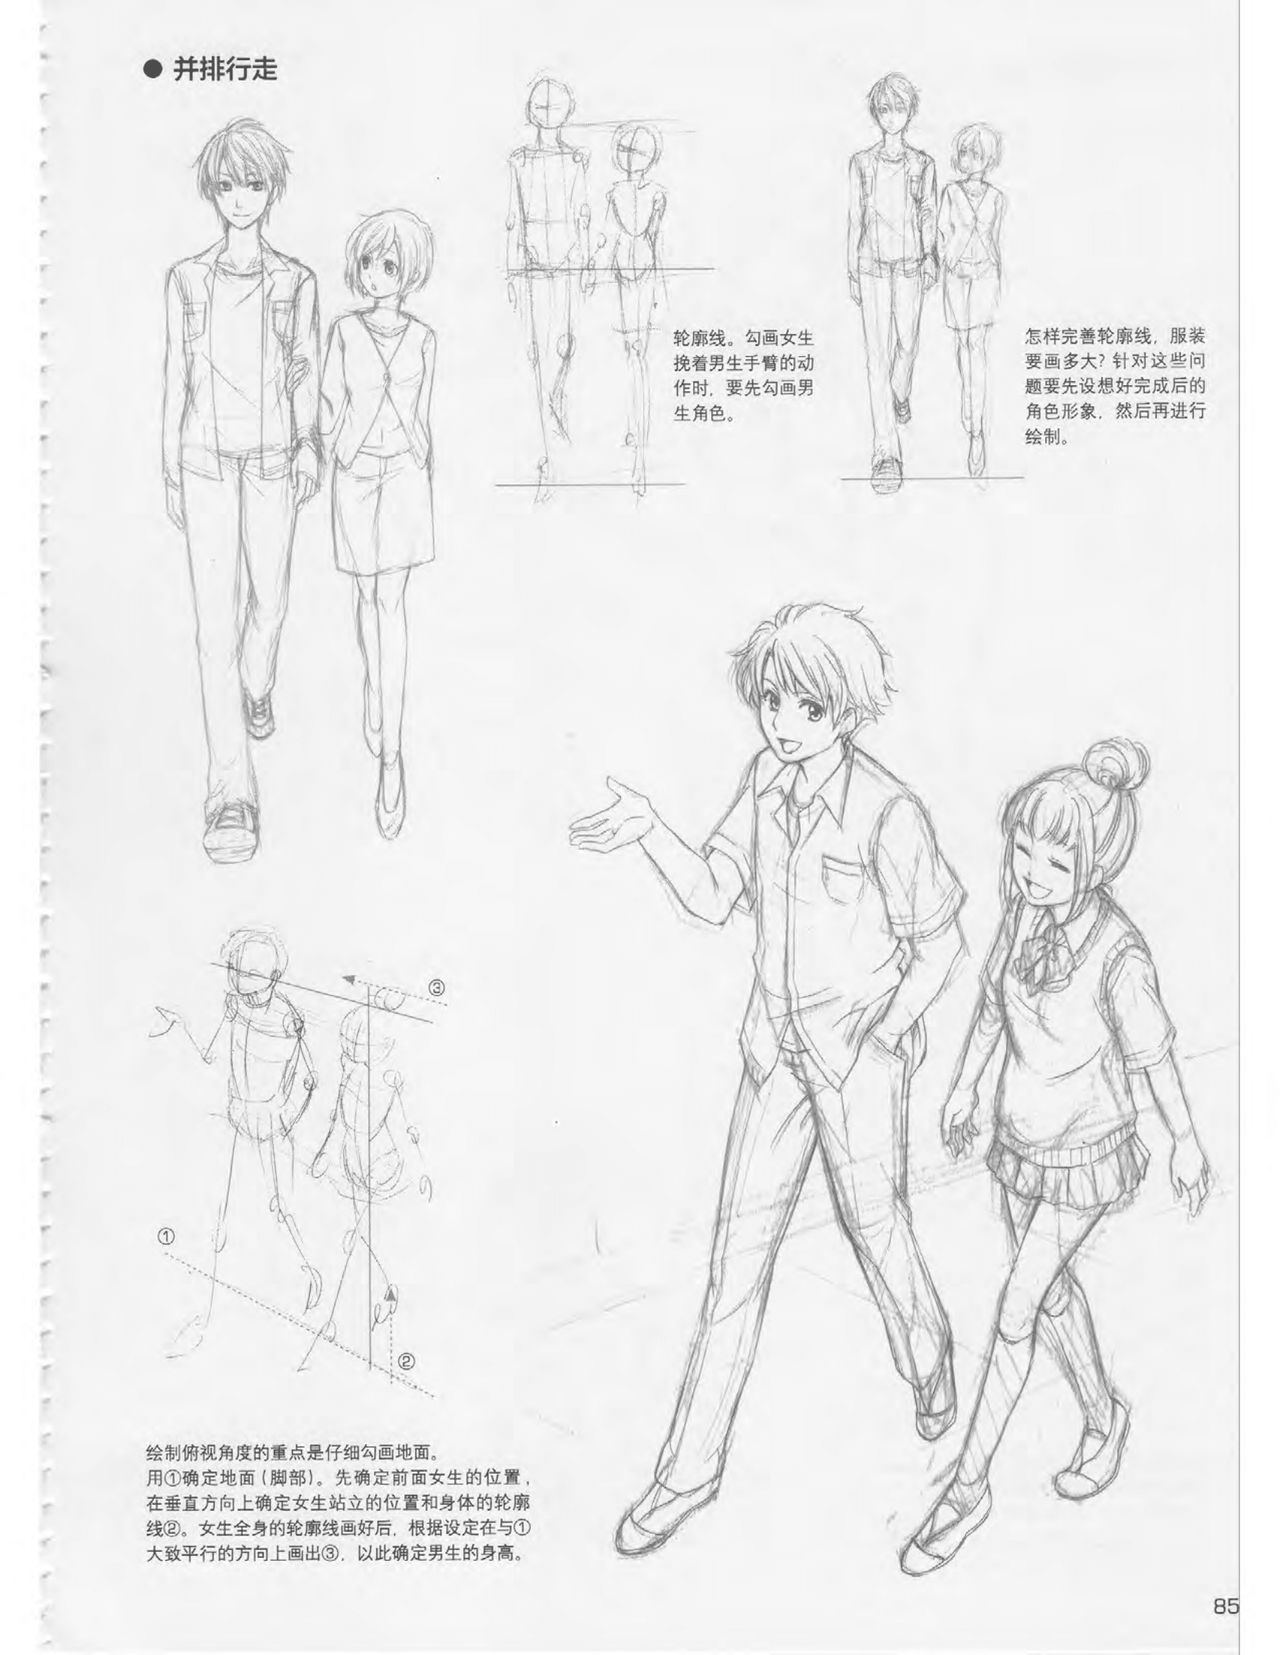 Japanese Manga Master Lecture 3: Lin Akira and Kakumaru Maru Talk About Glamorous Character Modeling 85